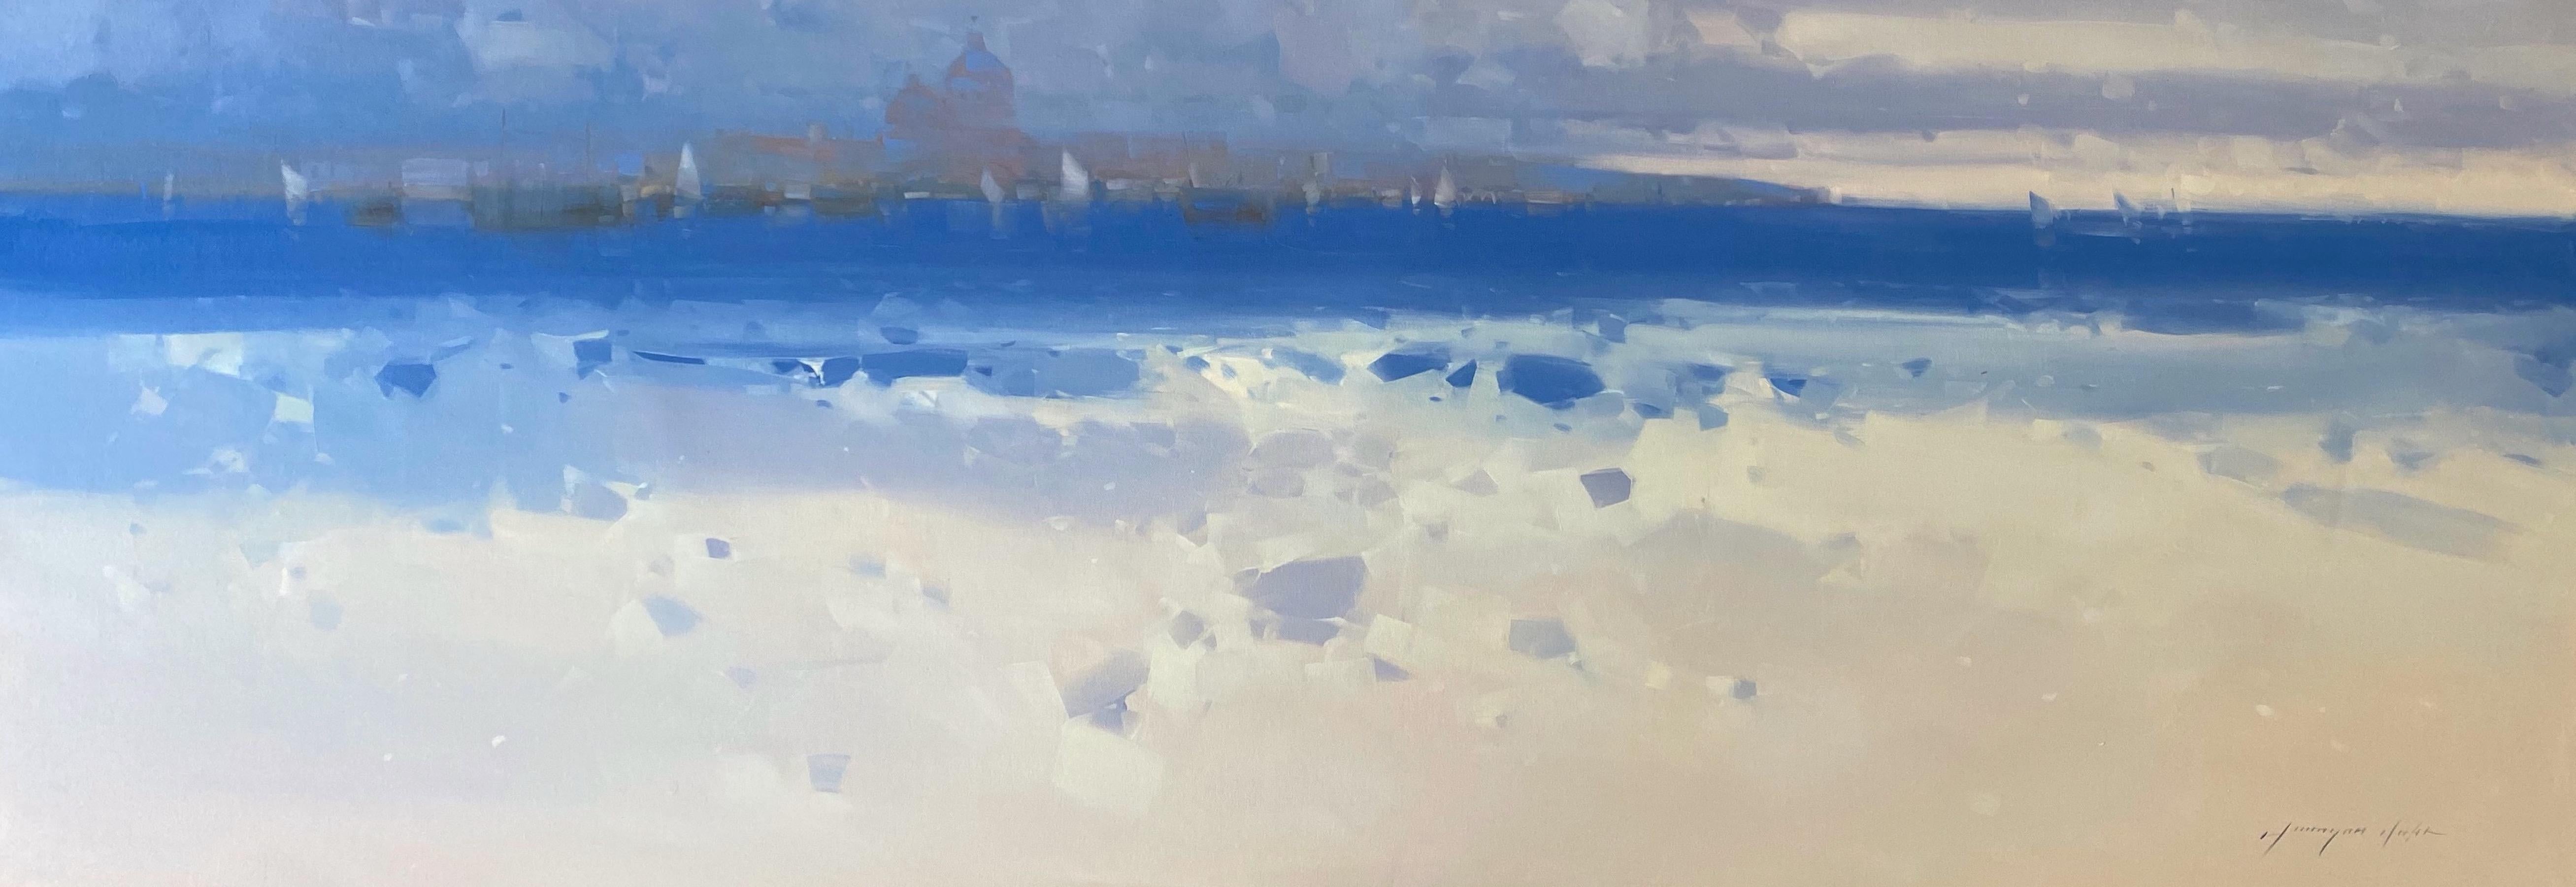 <p>Kommentare des Künstlers<br>In diesem ruhigen abstrakten Bild von Vahe Yeremyan verweilen subtile Andeutungen der Morgendämmerung unter dem kühlen lavendelfarbenen Himmel. Während der Hafen langsam erwacht, schweben weiche Wolkenbüschel über der